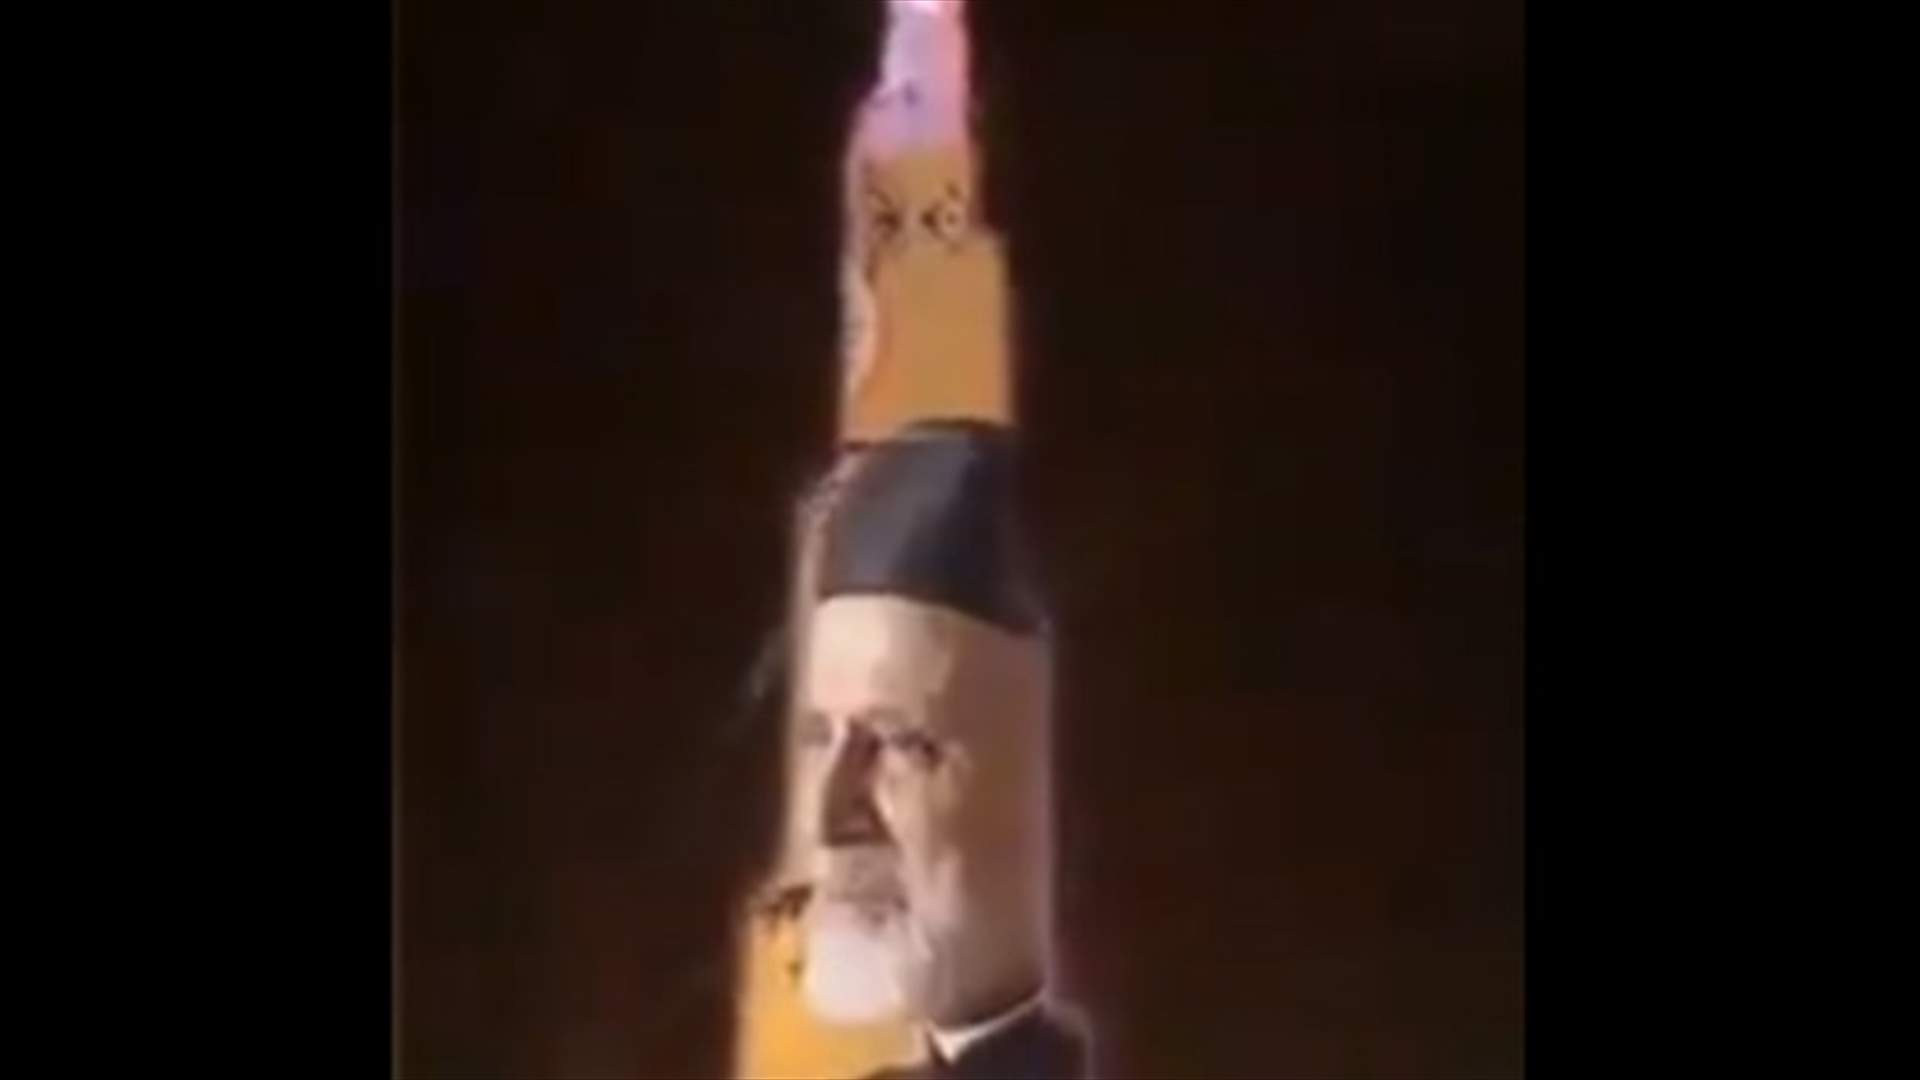 فيديو صورة البطريرك صفير على برج خليفة مركب وغير صحيح